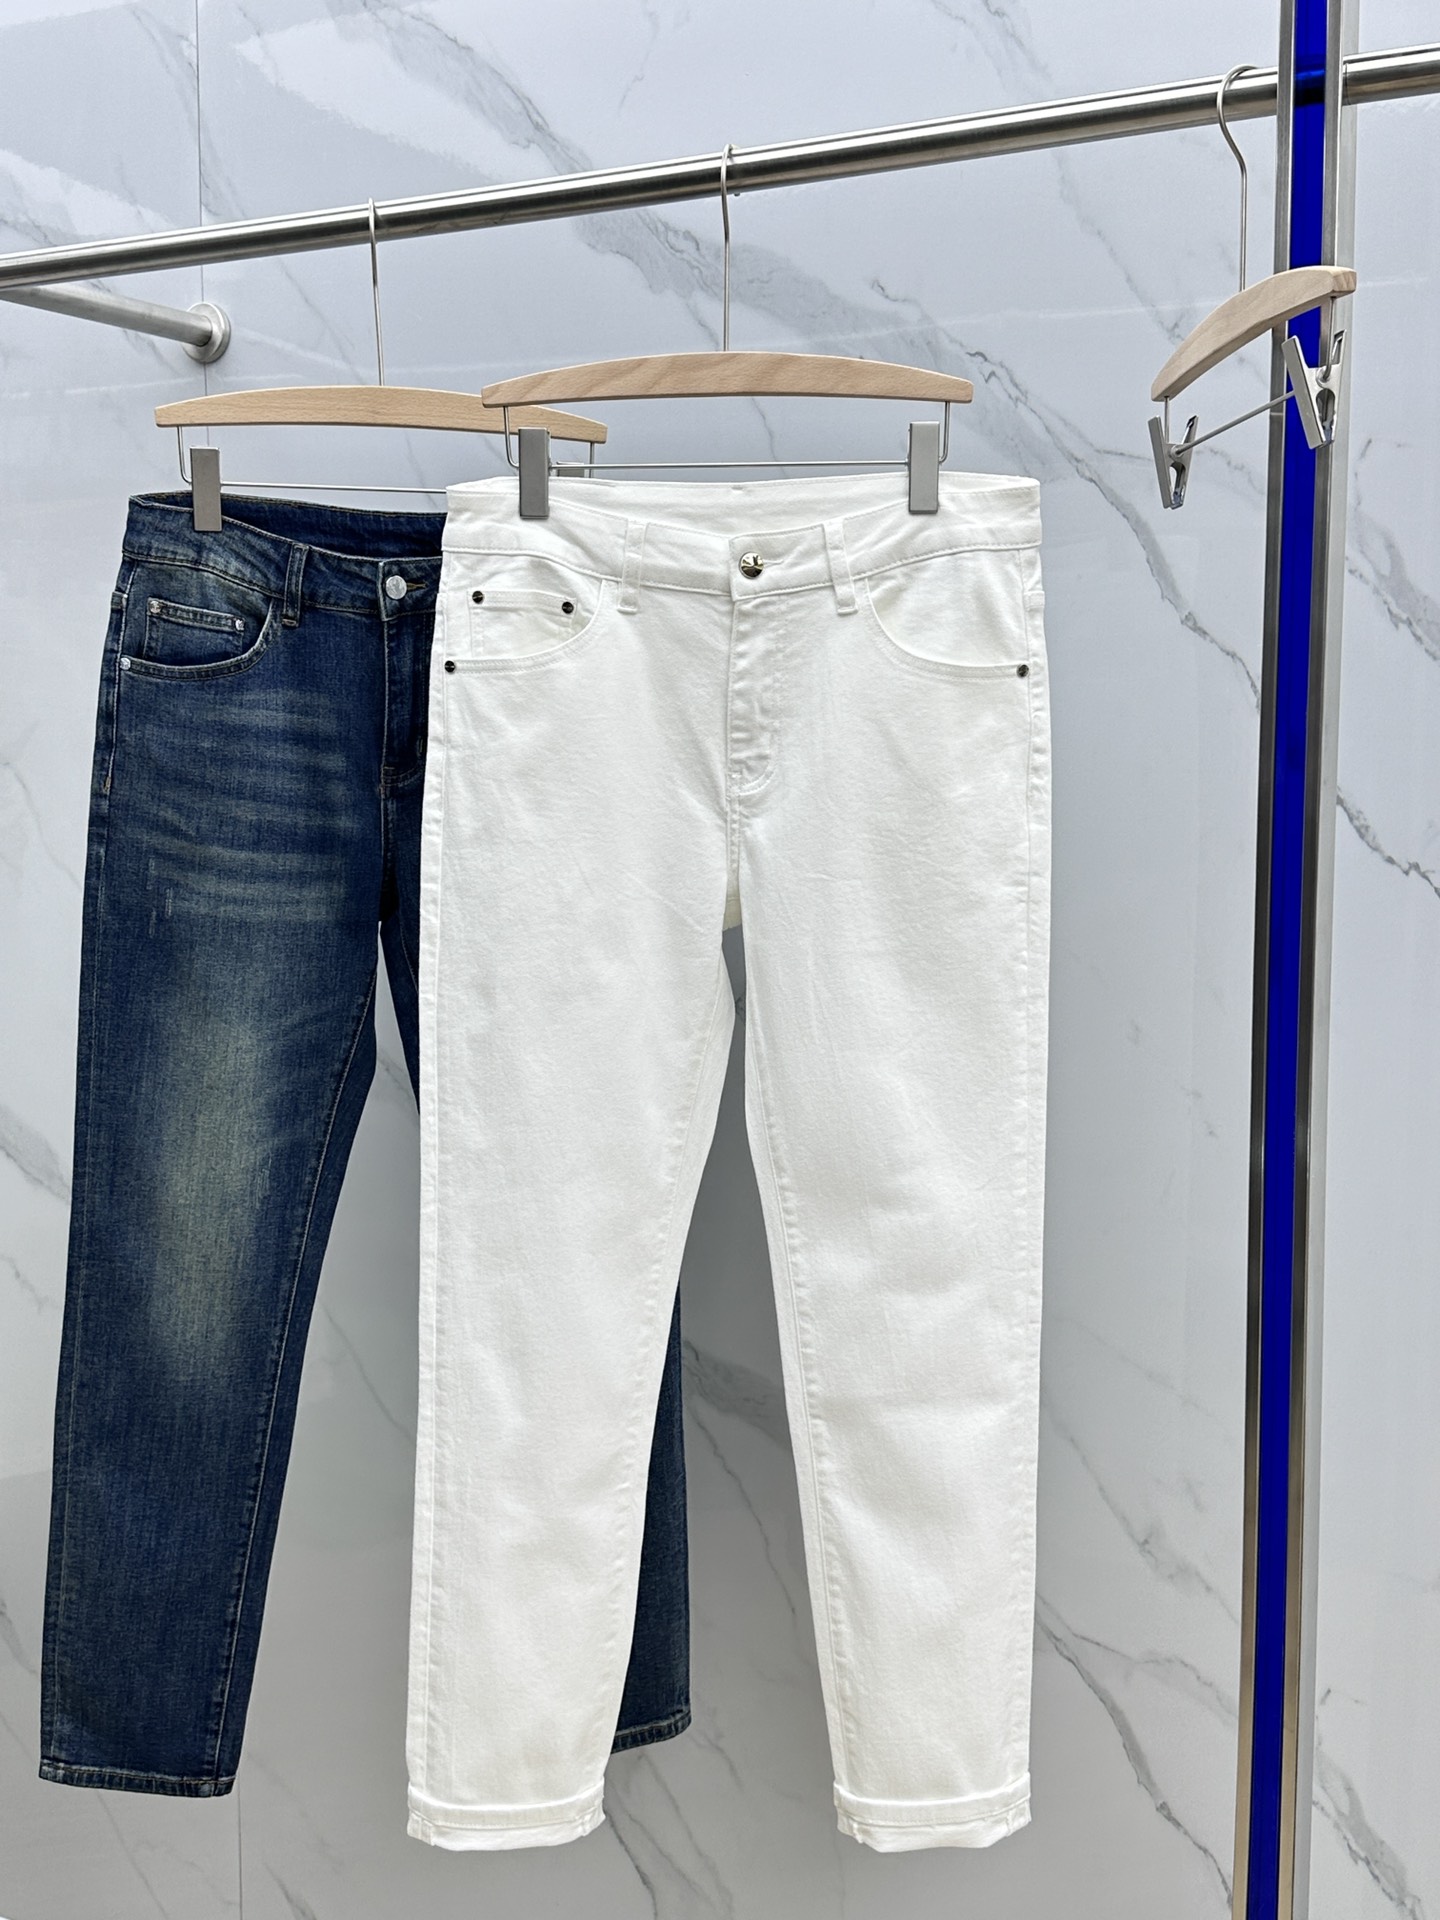 新作入荷格安 フェンディ服メンズコピー デニム素材 筒形パンツ ズボン ファッション シンプル 美脚 品質保証 ホワイト_8